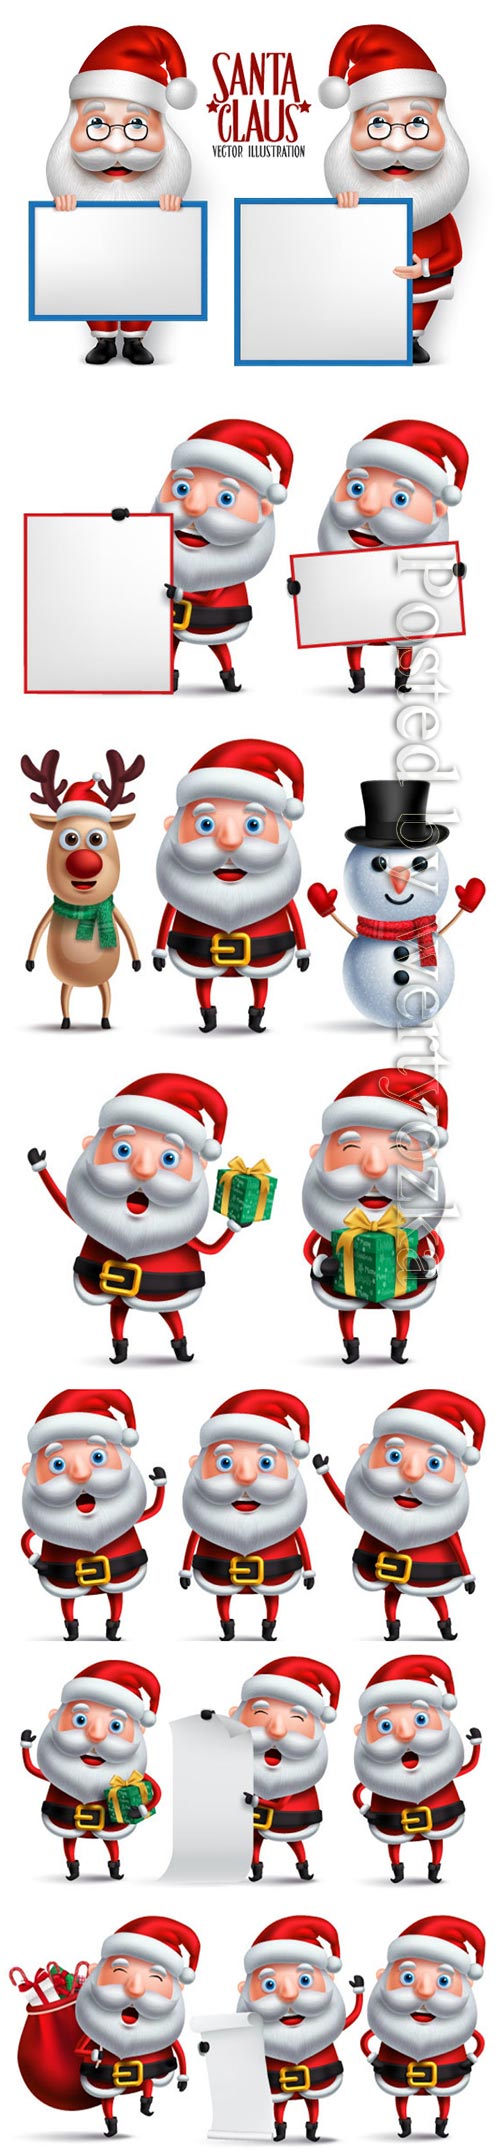 Santa claus christmas character set